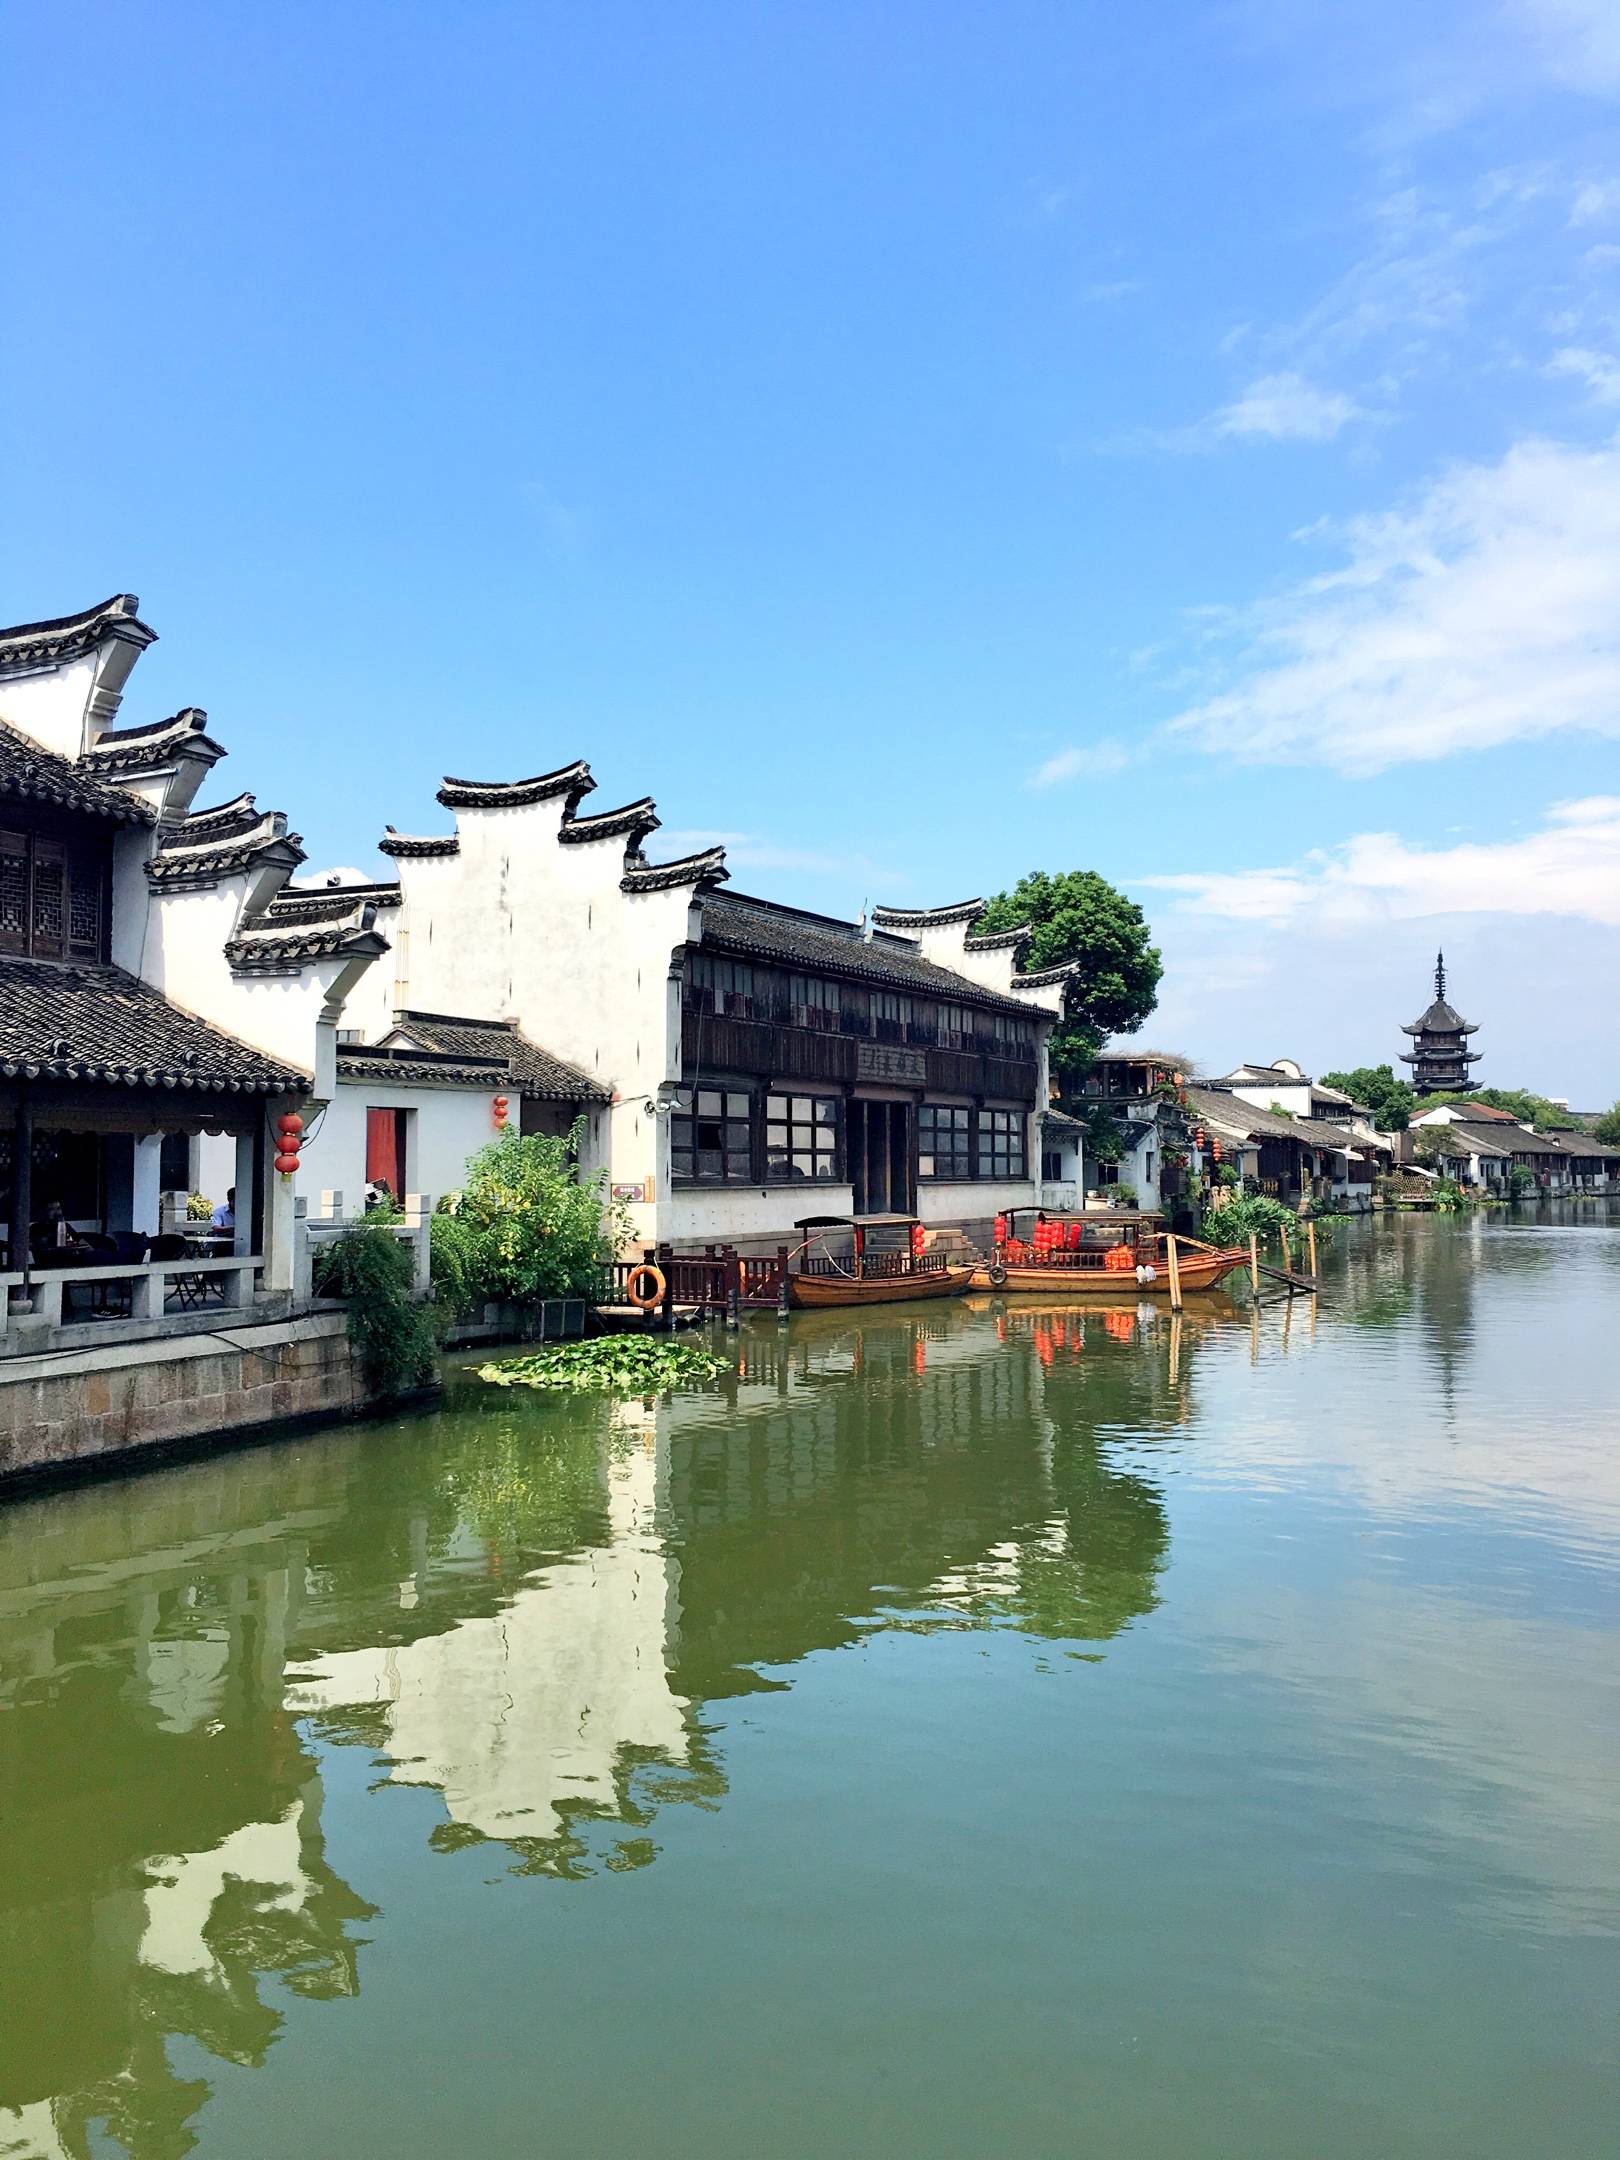 苏州被忽略的江南名镇,是中国蚕丝之乡,是古代丝绸的重要产地